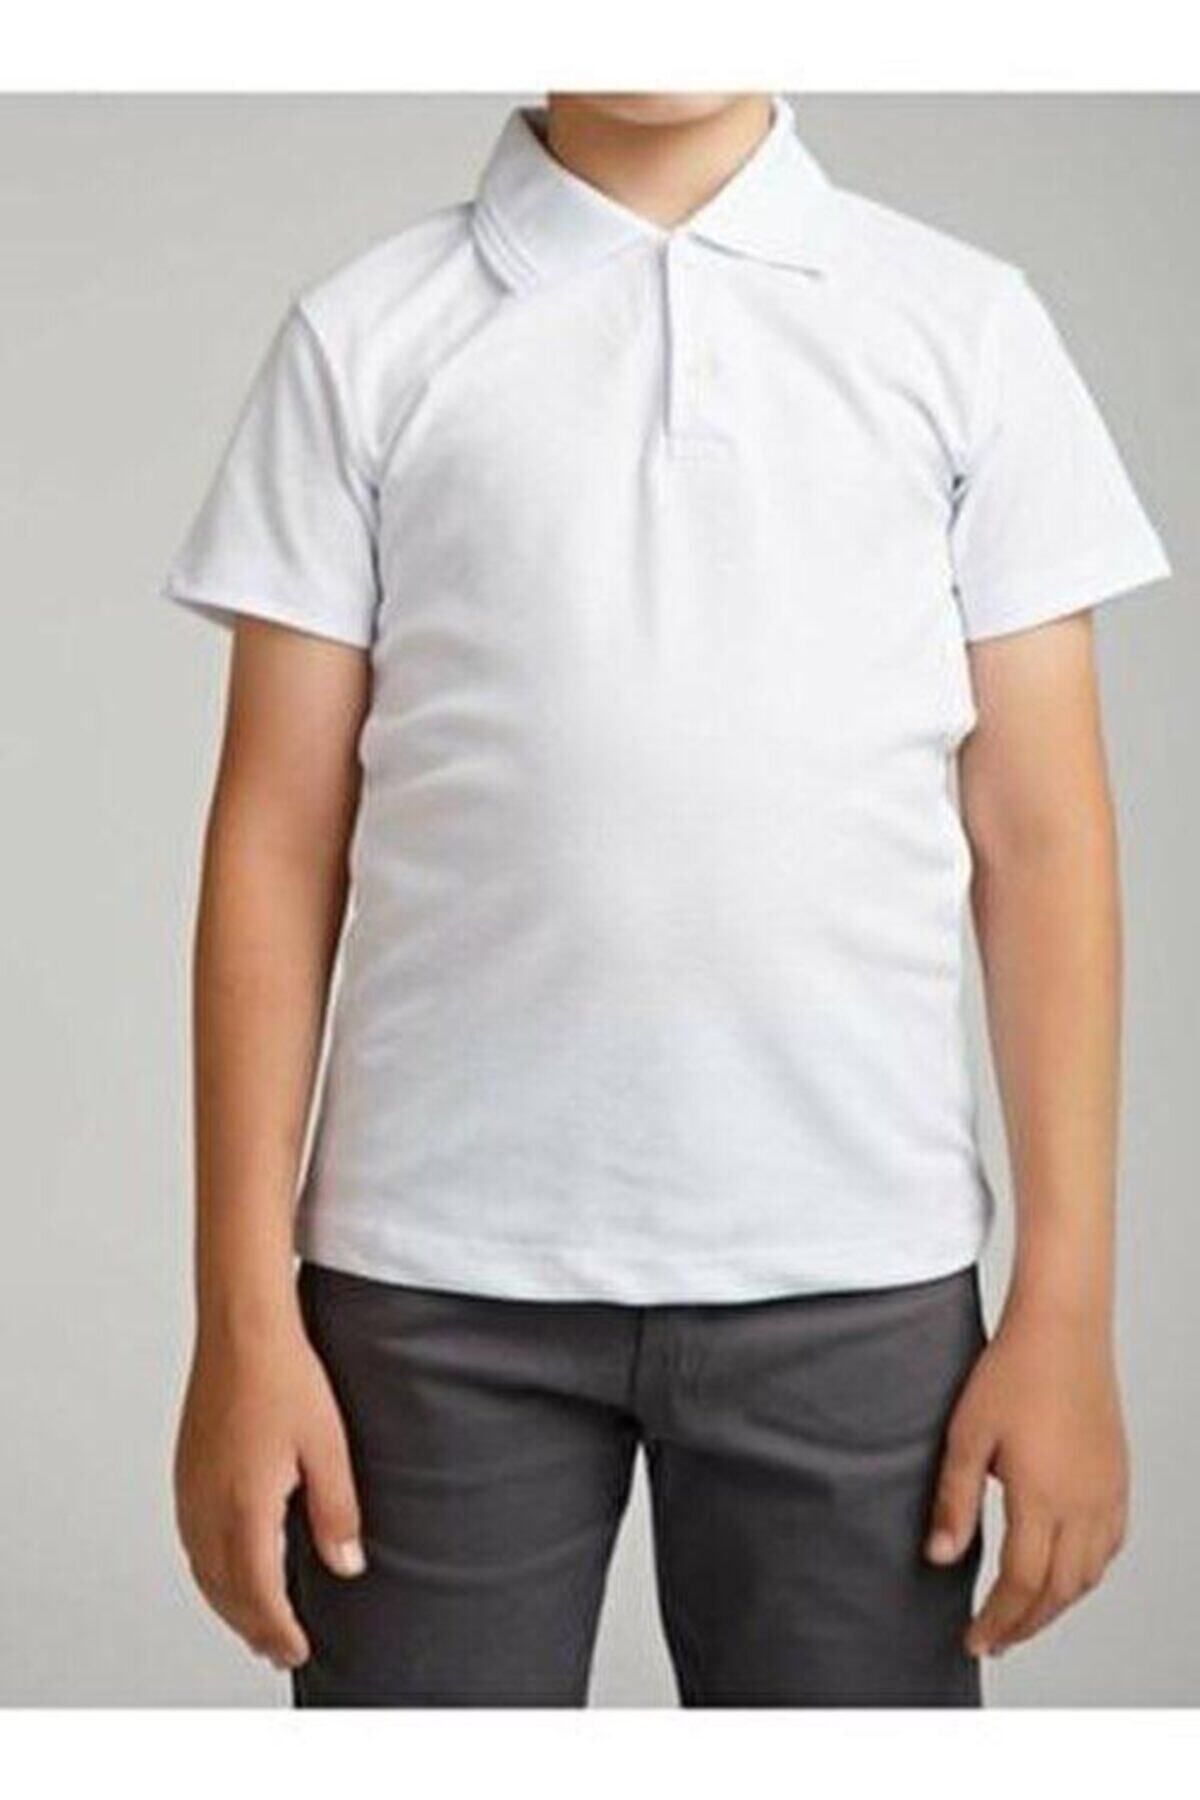 Papatya Baby Kids Polo Yaka Kısa Kollu Unısex Okul Tişörtü Gösteri Kıyafeti Günlük Kıyafet Çocuk/yetişkin